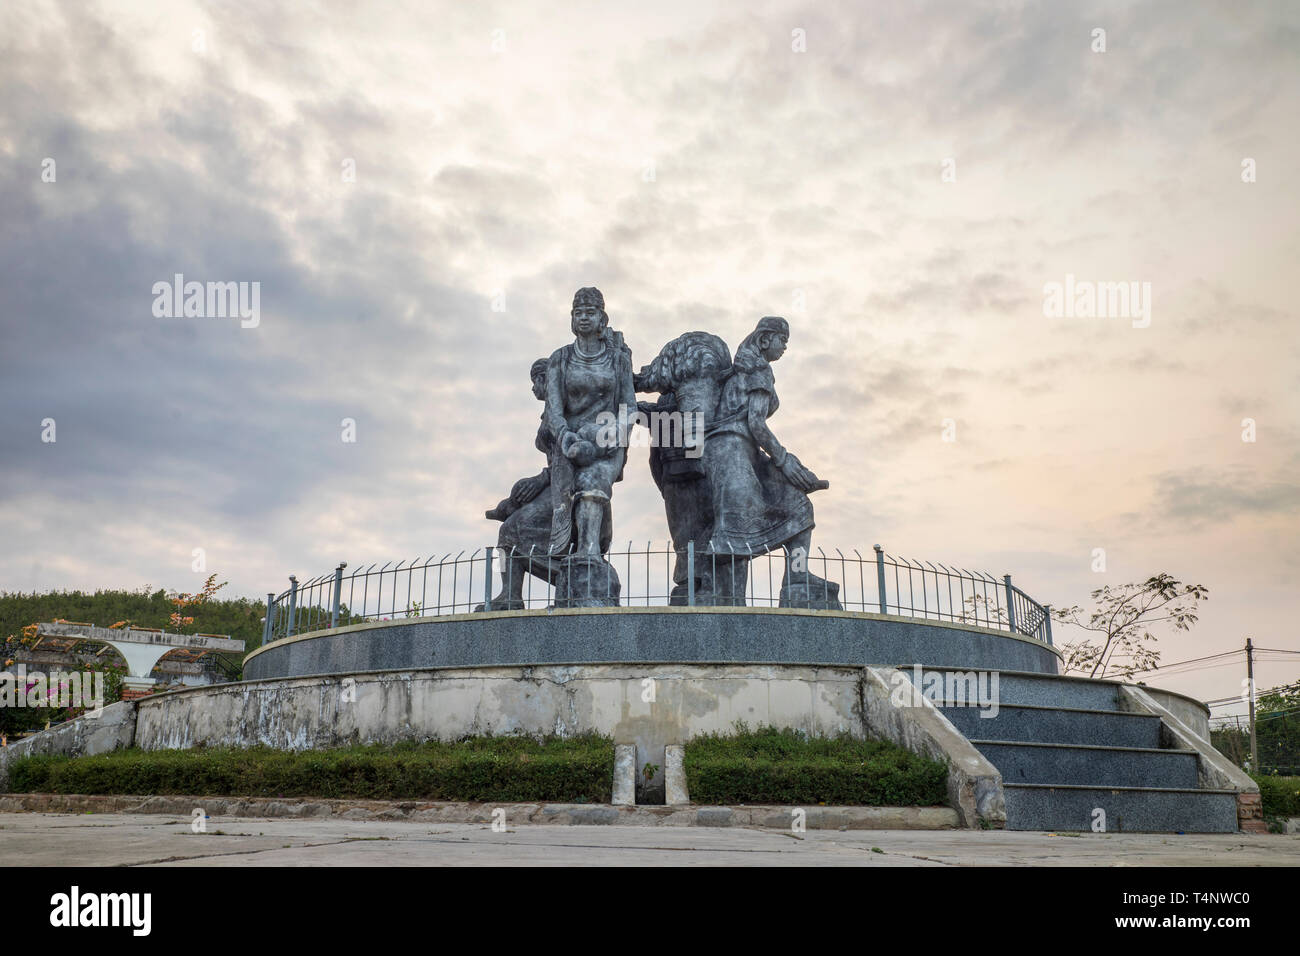 Monument de Vietnamiens minorité ethnique dans la province de Kon Tum, hauts plateaux du centre du Vietnam Banque D'Images